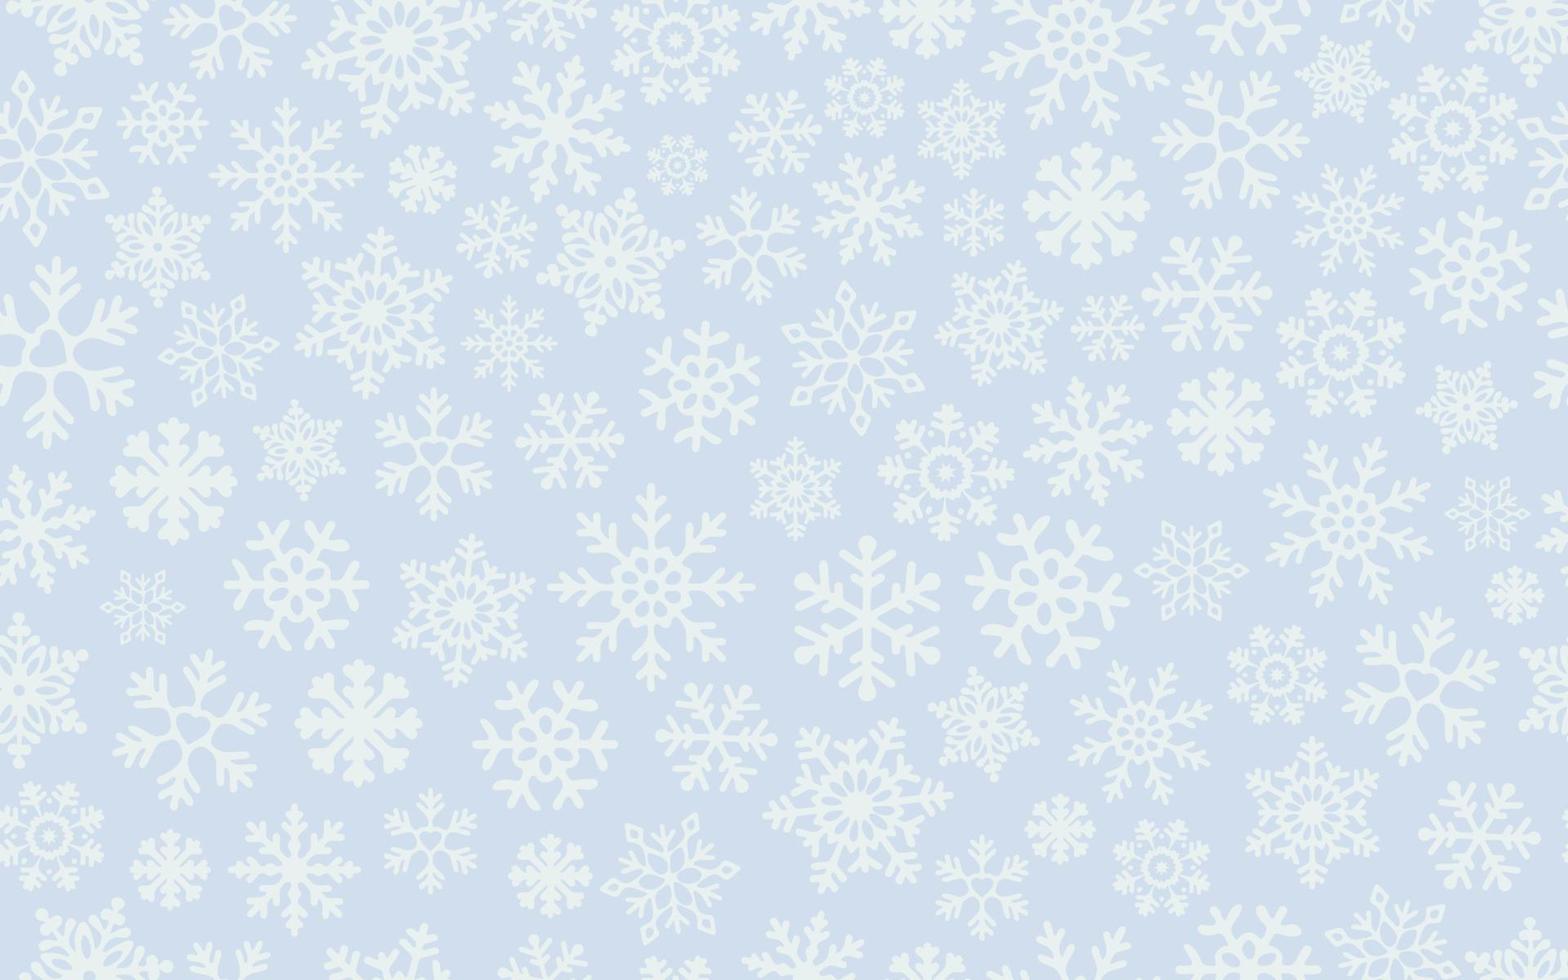 flocons de neige légers sur fond bleu. modèle sans couture de vecteur pour la réplication continue. flocon de neige tombant de noël sur fond bleu. concept de vacances d'hiver.